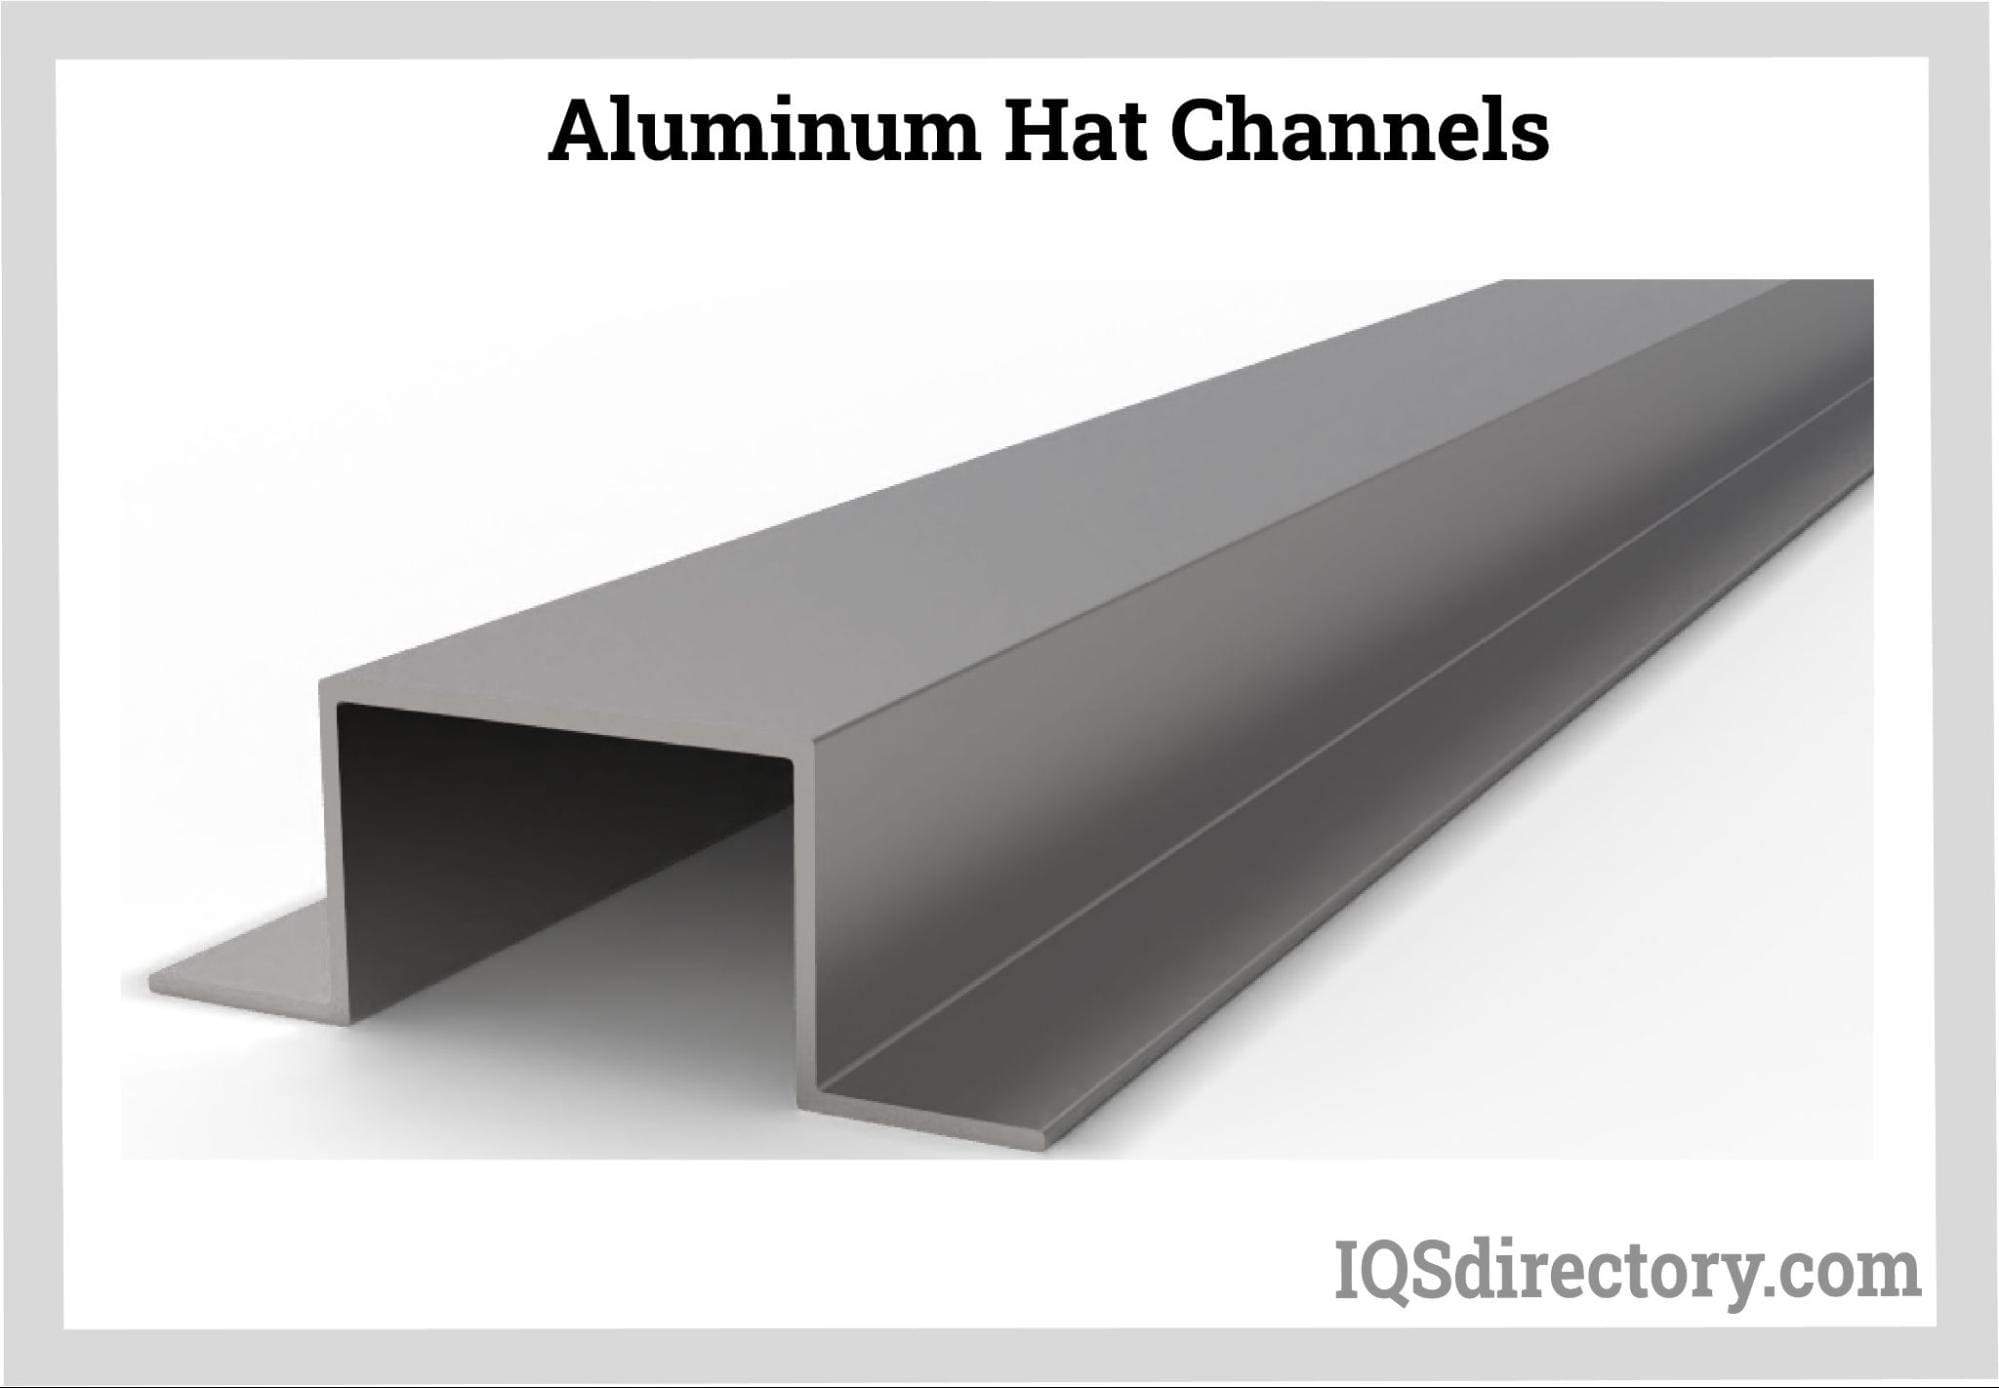 Aluminum Hat Channels